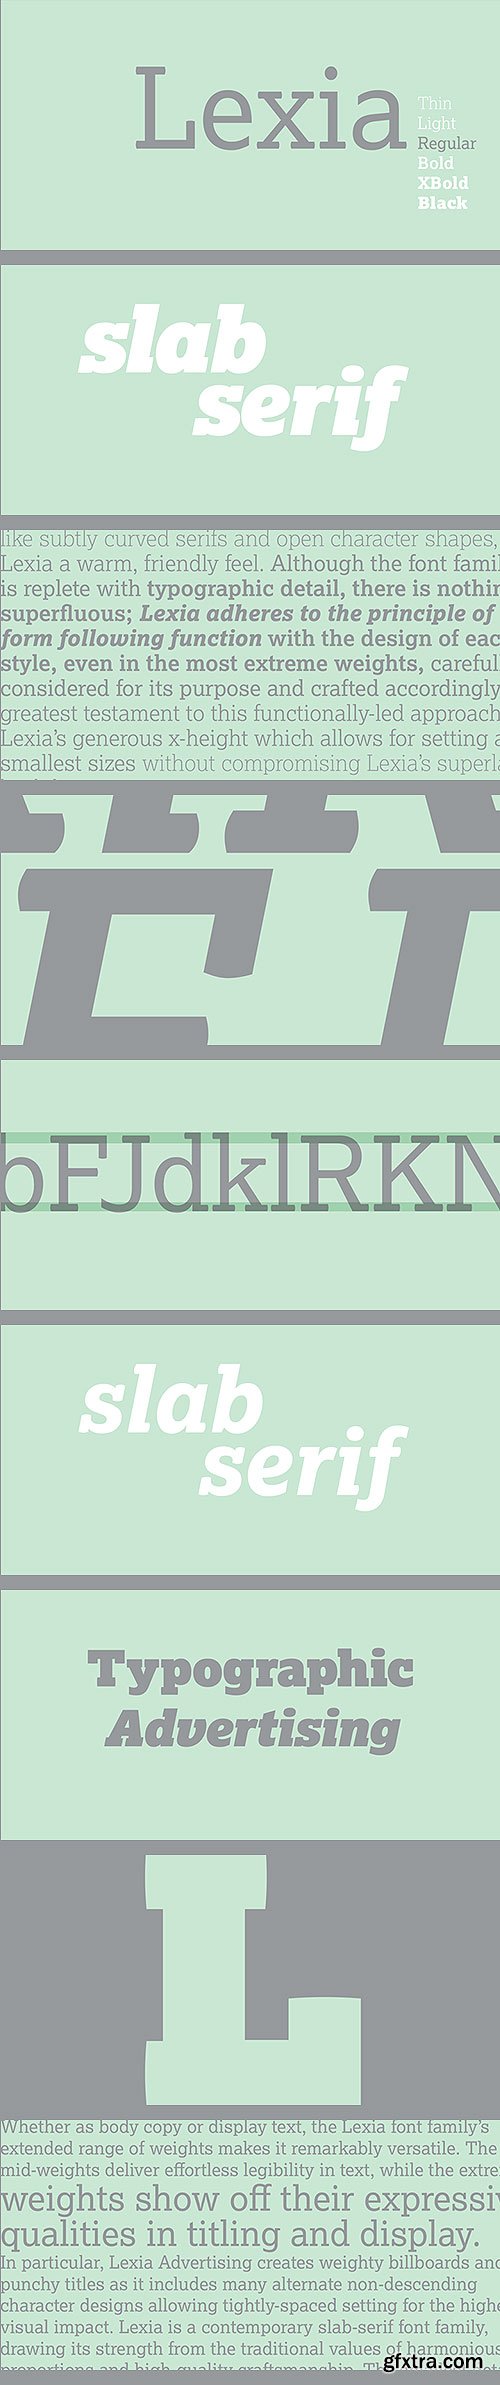 Lexia Slab Serif Font Family 14xOTF $960